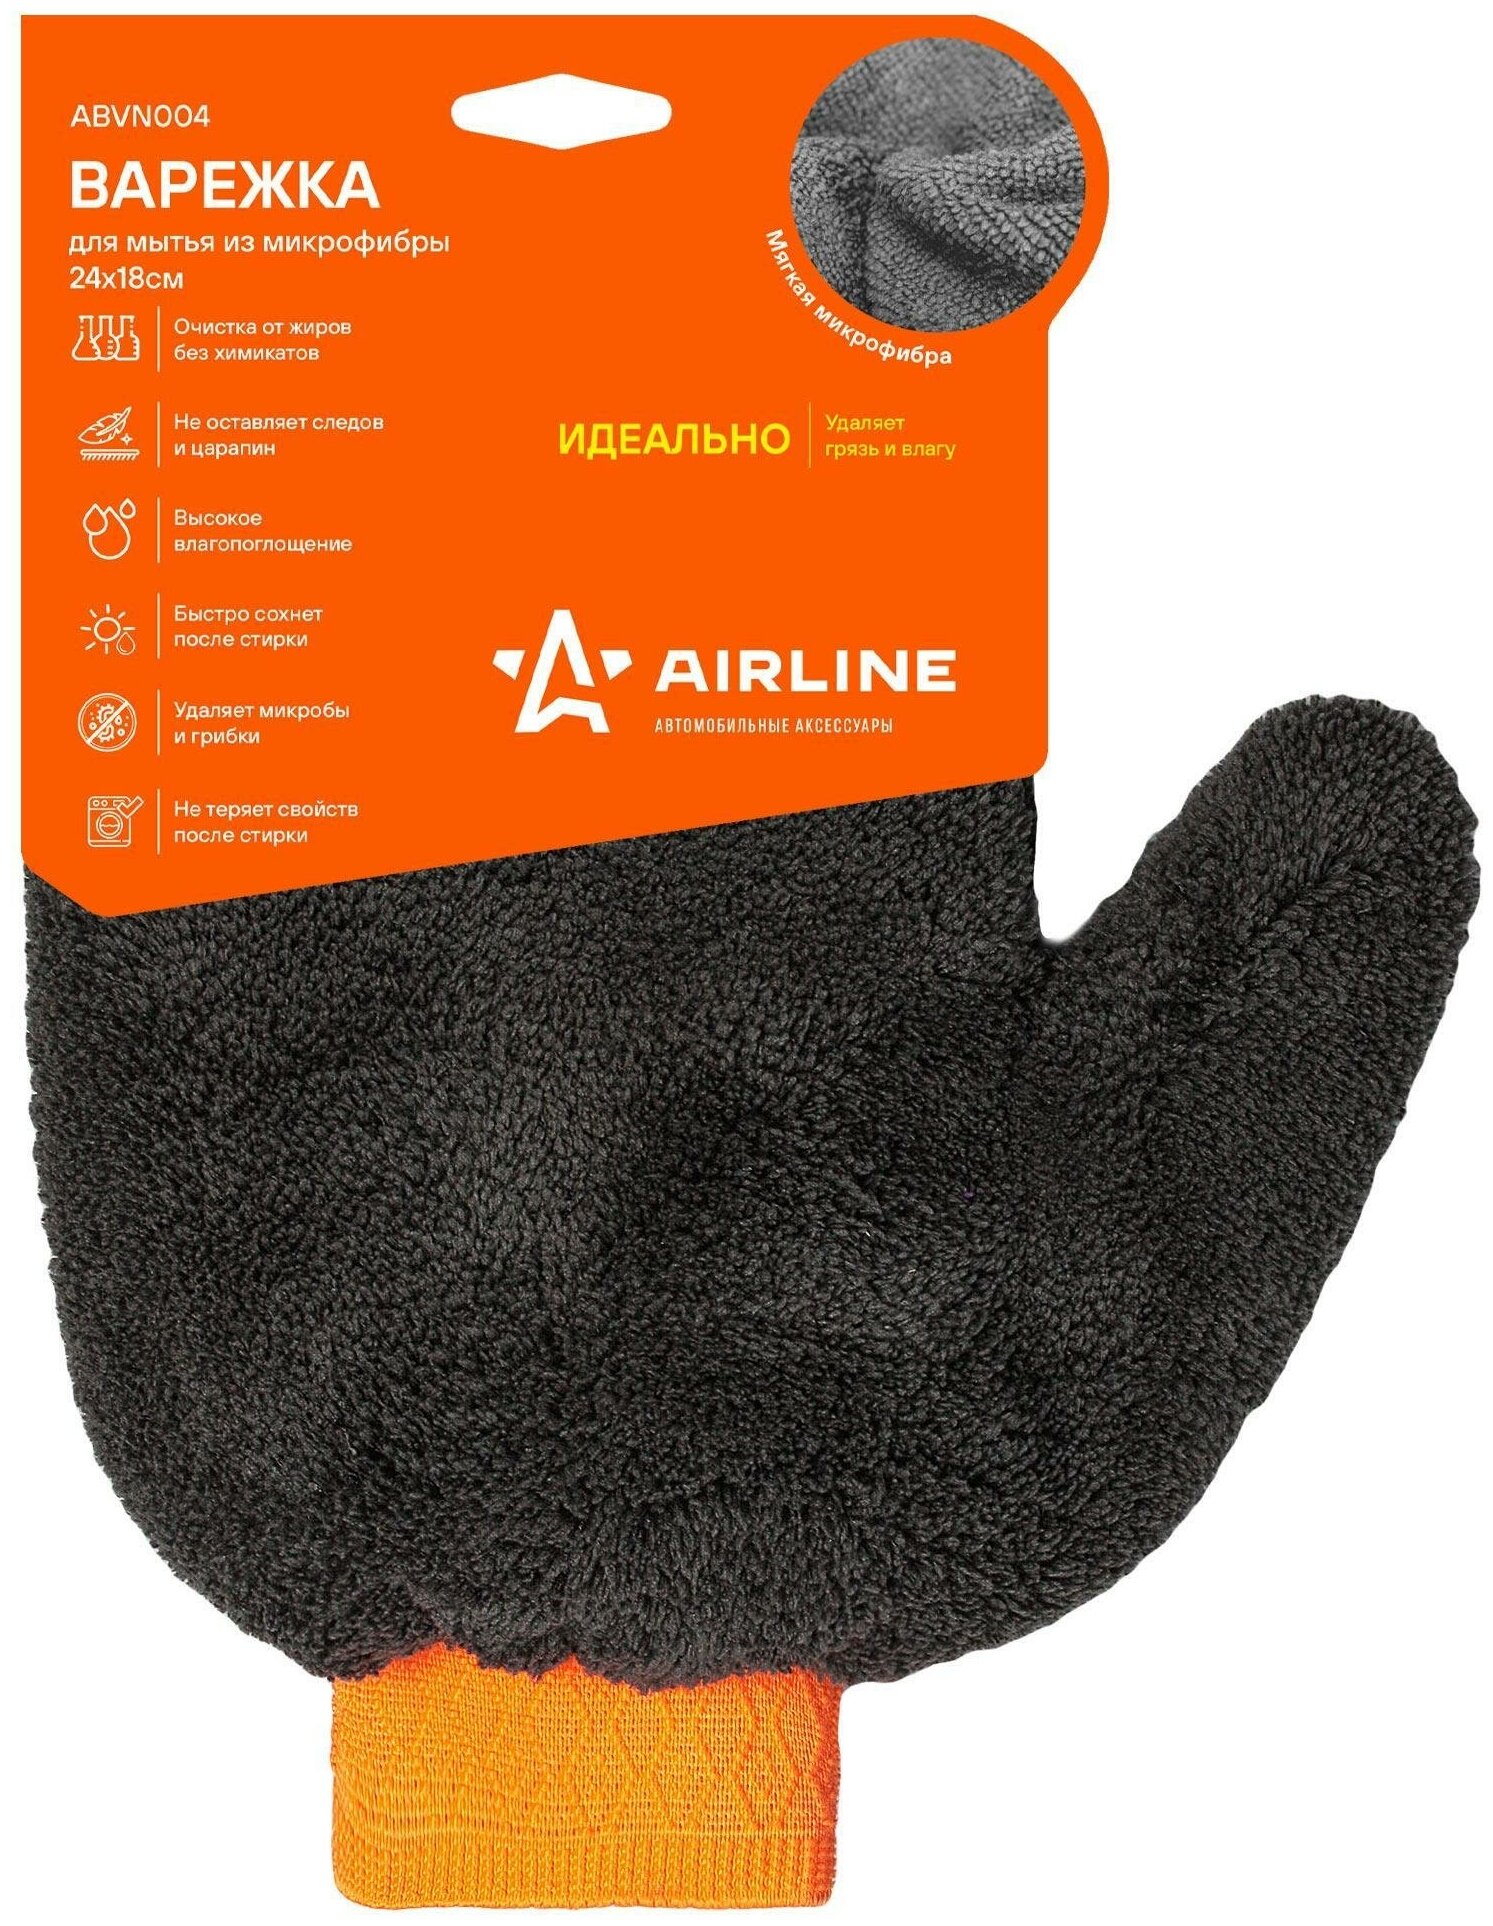 Варежка для мытья из микрофибры (24*18 см) (ABVN004) AIRLINE